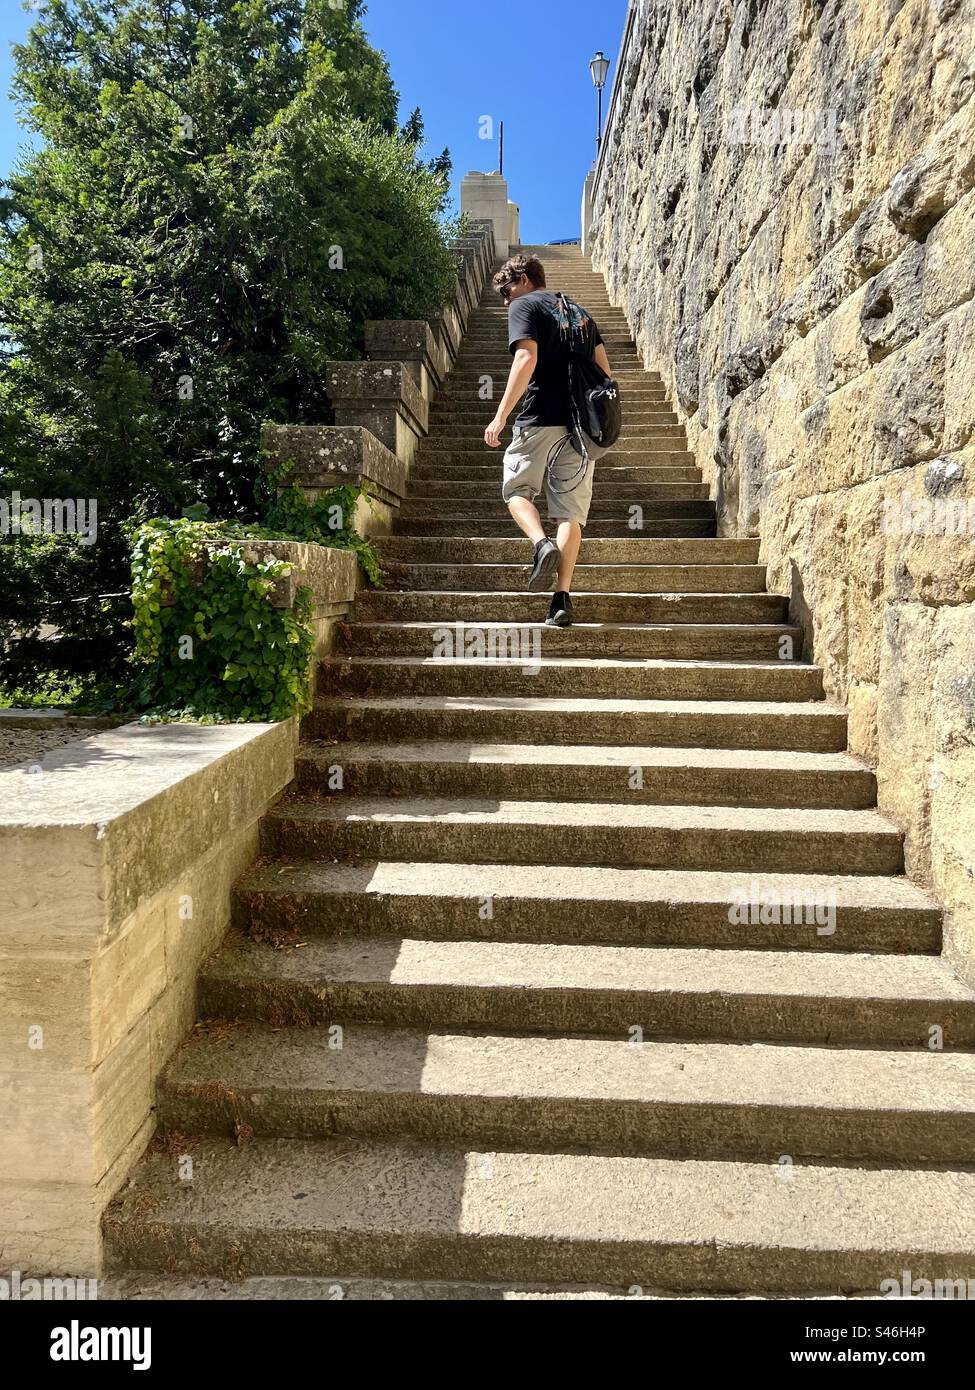 Step stair climb from Giardino dei Liburni to Vua Eugippo street in the mountainside Republic of San Marino Stock Photo